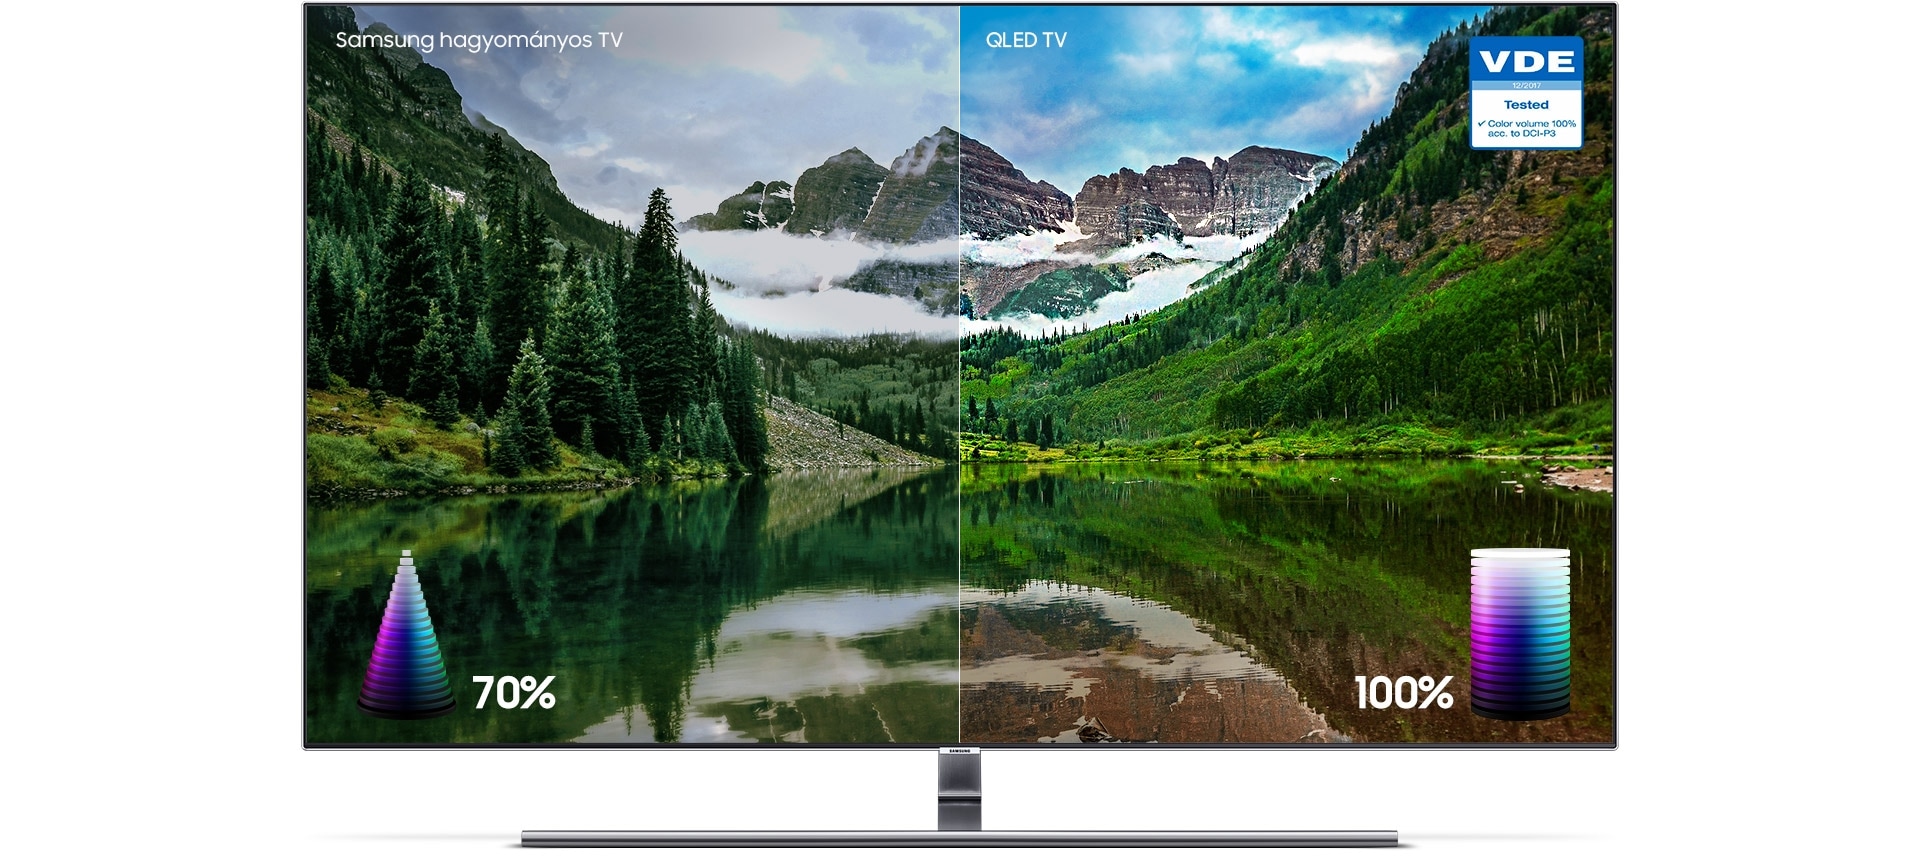 Egy természetkép a Q Színek bemutatásához. A bal oldalon egy másik tévé mutatta kép látszik, 70%-os színgazdagsággal. A színek kissé tompák. A jobb oldalon a Samsung QLED TV mutatta kép látszik 100%-os színgazdagság mellett, bemutatva az élénk és telt színekből álló palettát.